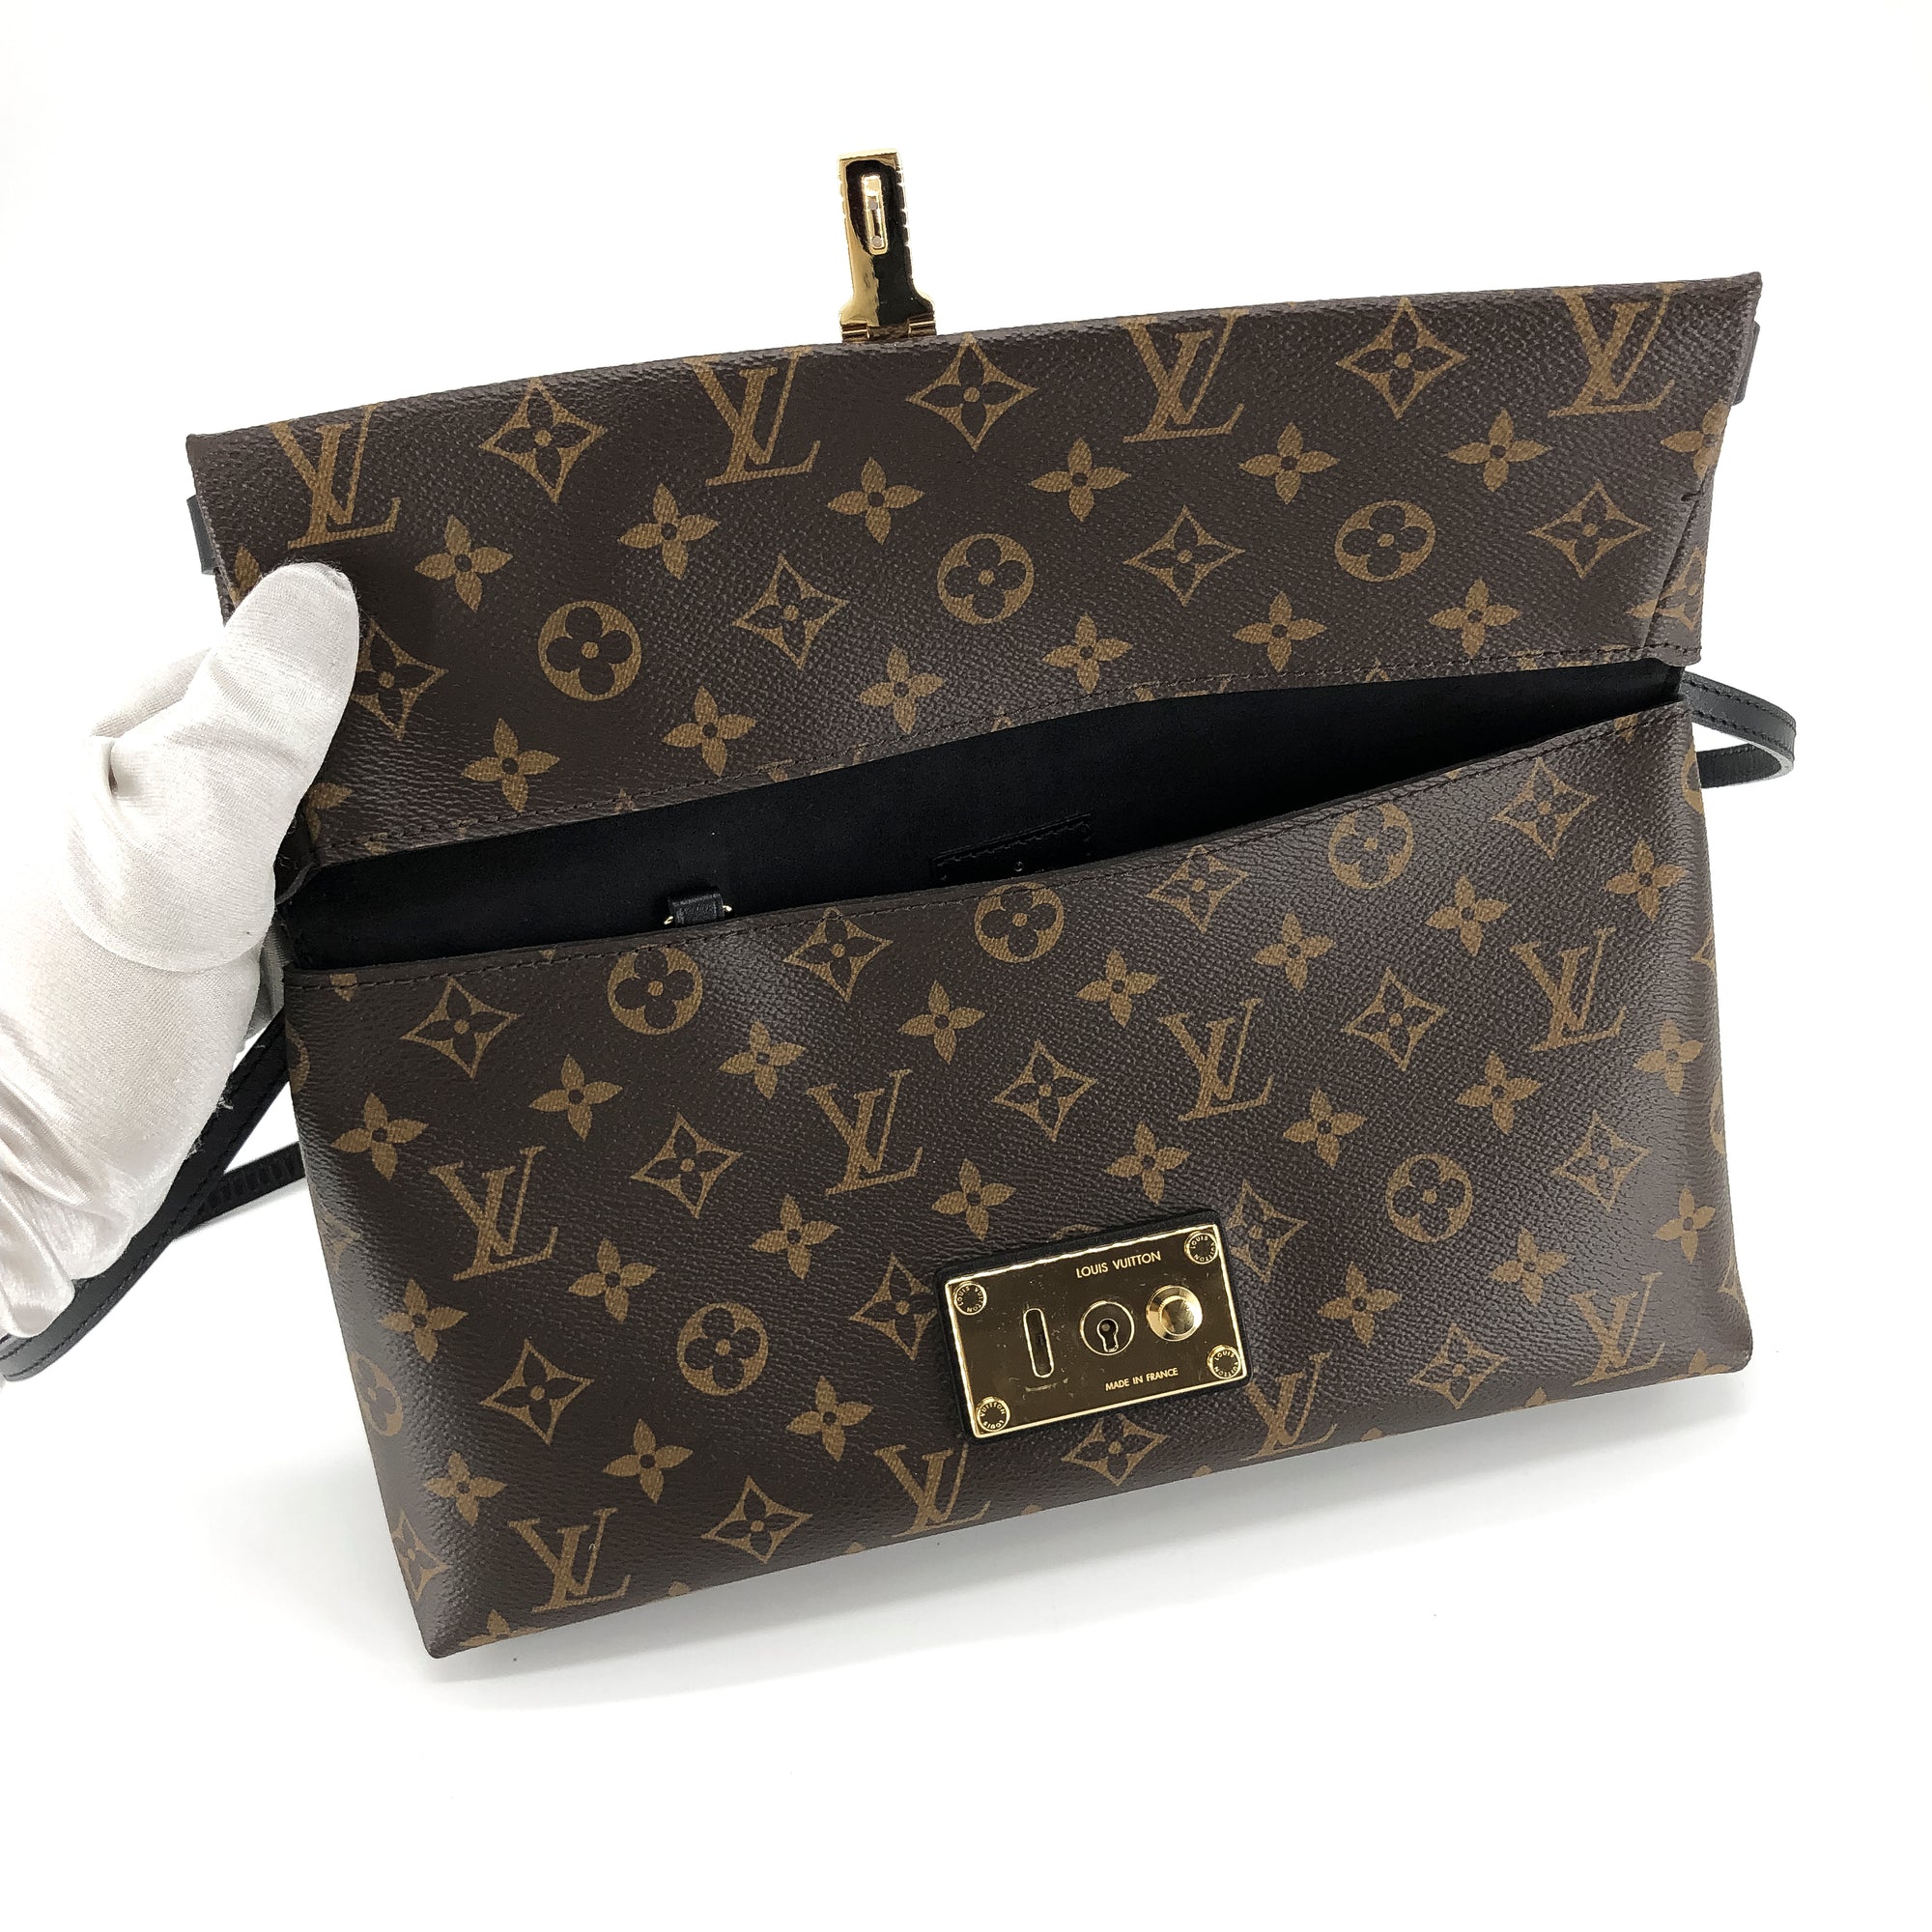 Louis Vuitton, Bags, Classic Lv Tootsie Roll Bag